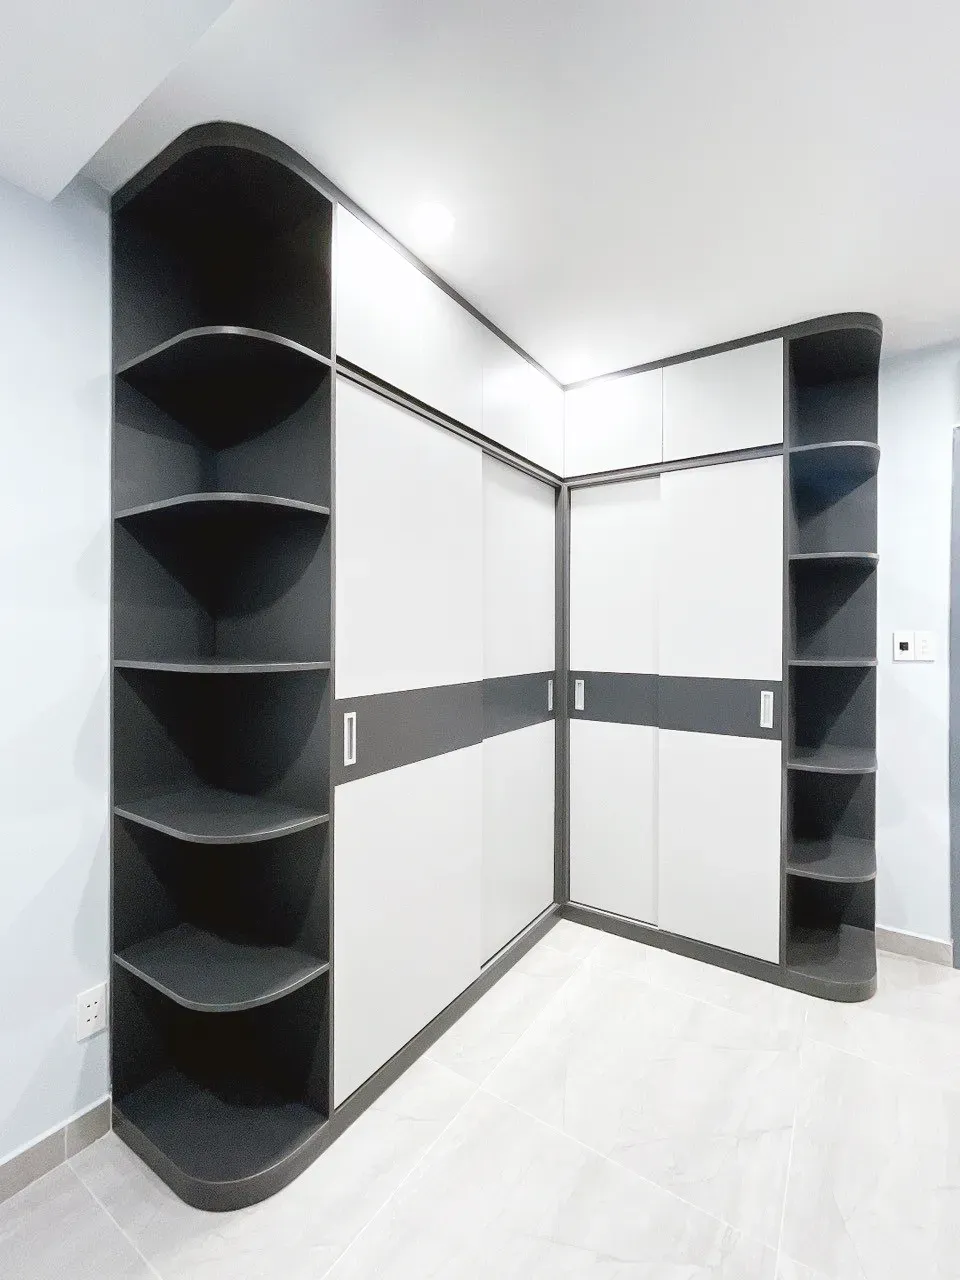 Phòng thay đồ - Căn hộ chung cư H2 Hoàng Diệu - Phong cách Modern + Minimalist  | Space T